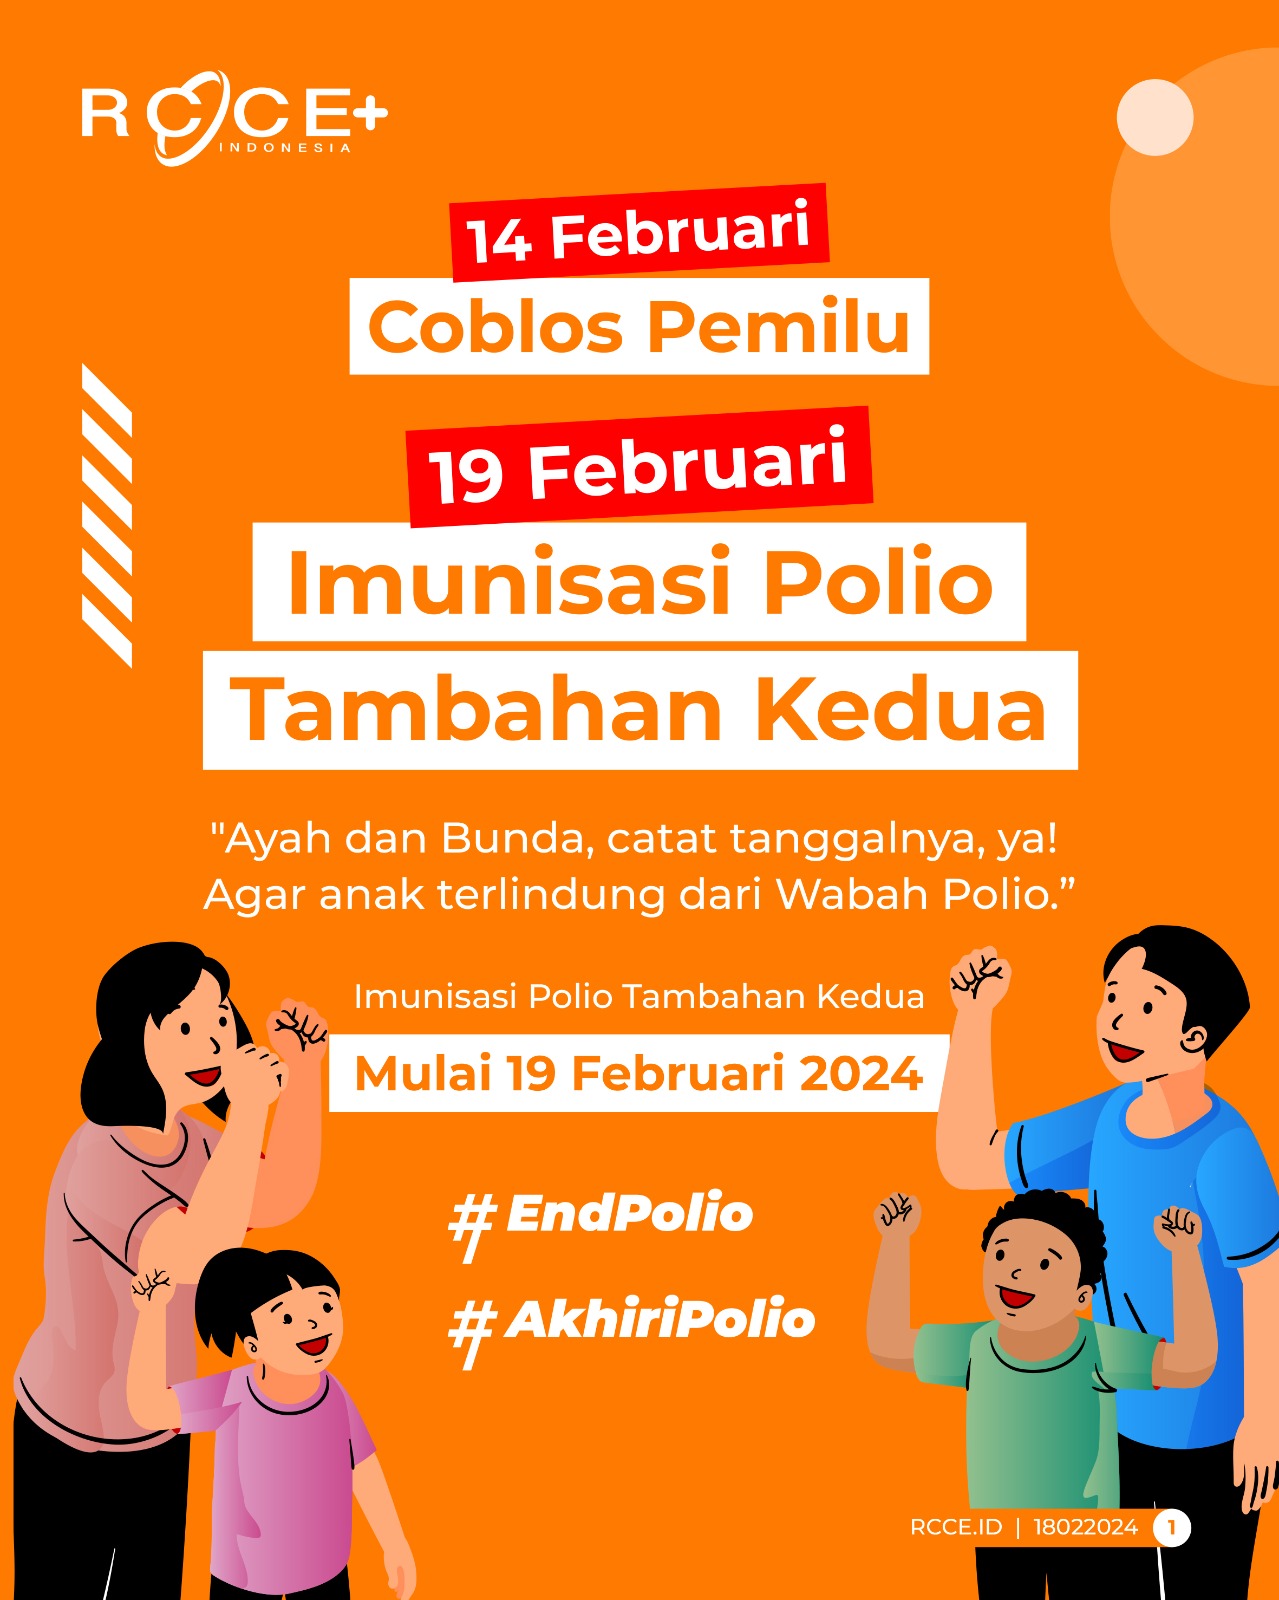 Imunisasi Polio Tambahan Kedua